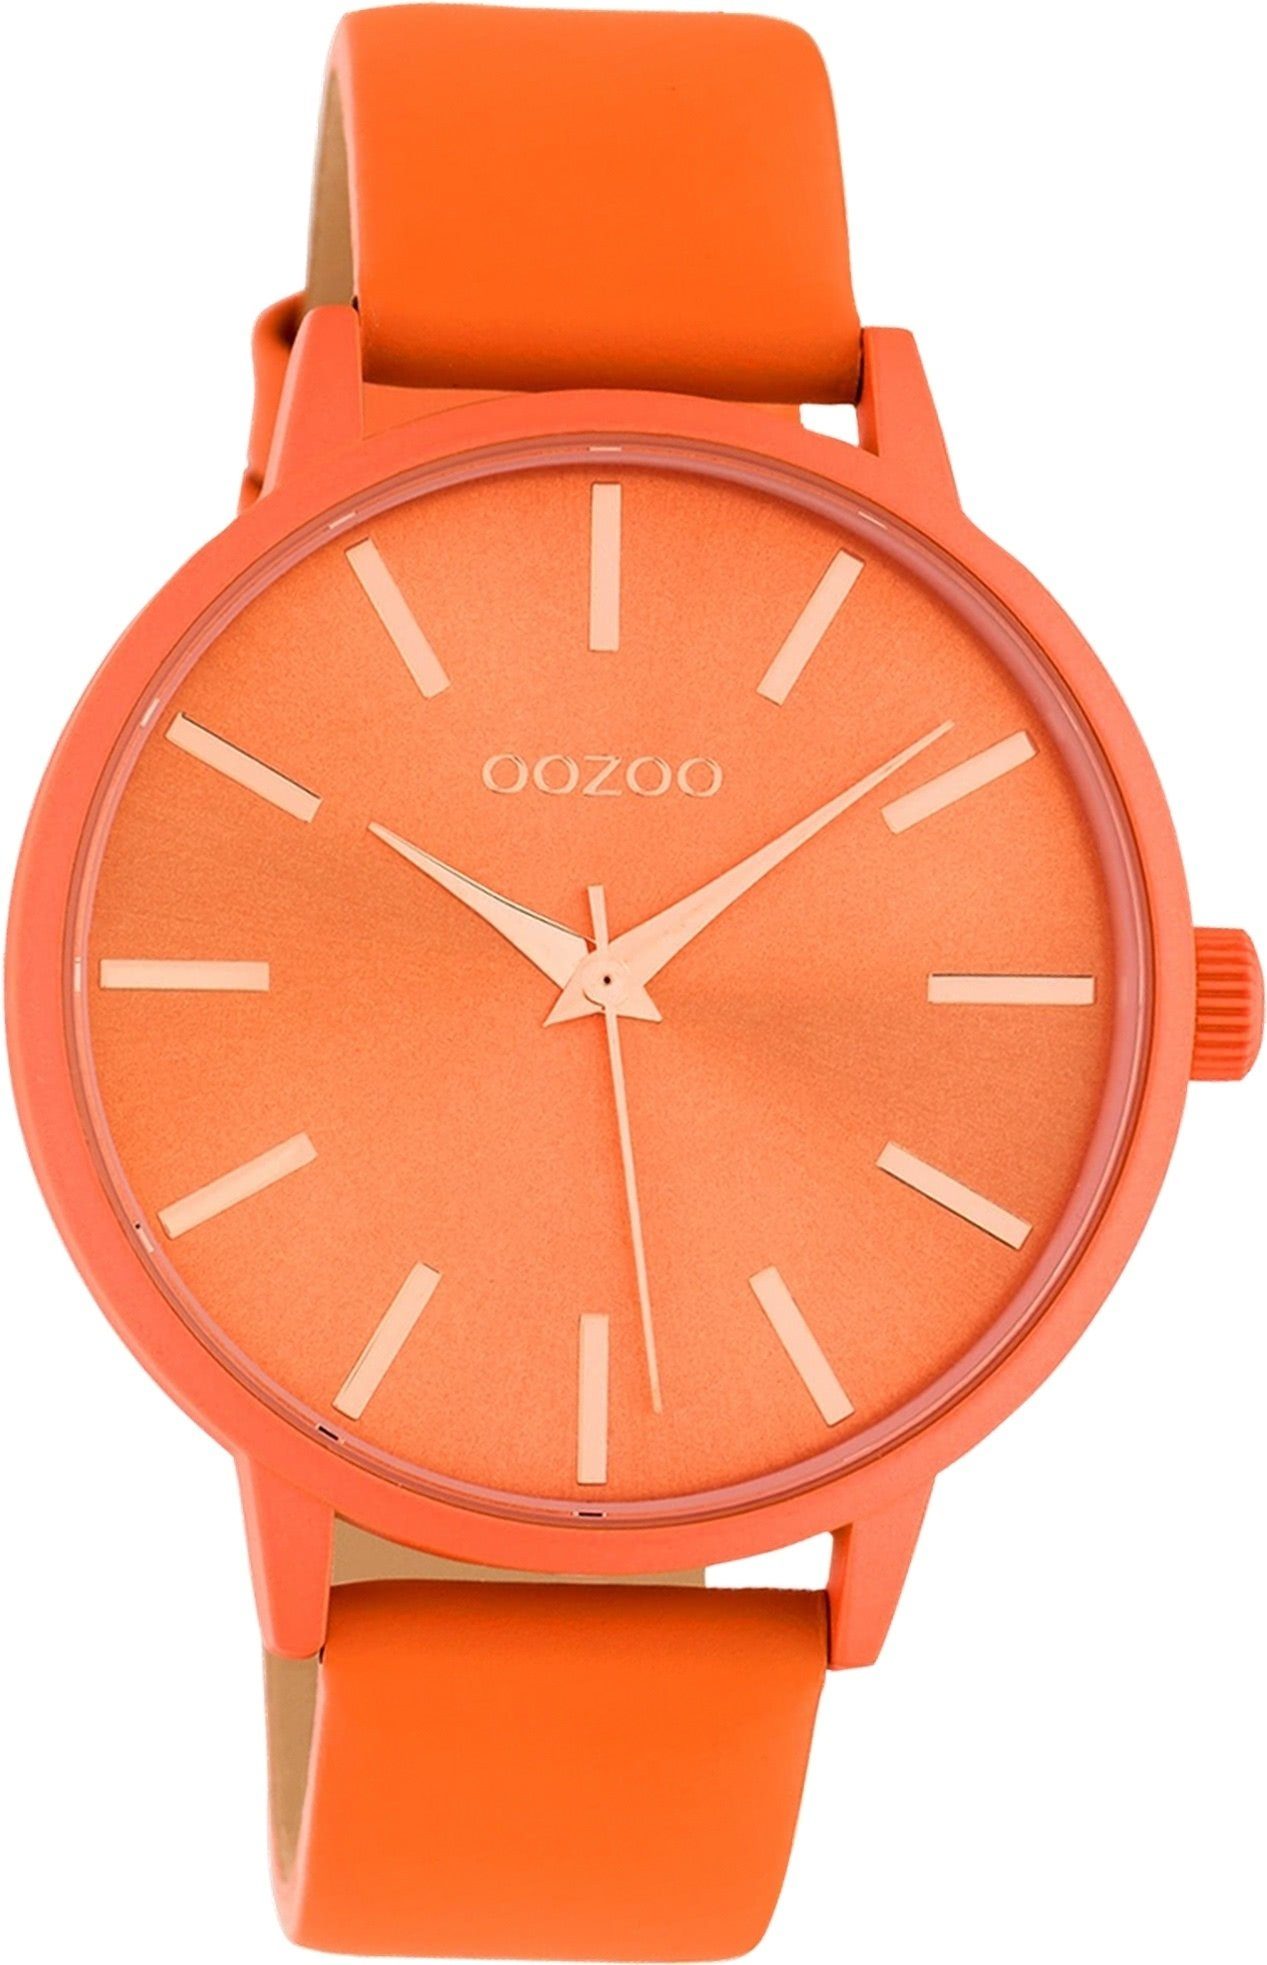 Versandkostenfreier Verkauf OOZOO Quarzuhr Oozoo rundes orange, Gehäuse, (ca. groß C10614 Leder Damen Damenuhr 42mm) Lederarmband Uhr Analog